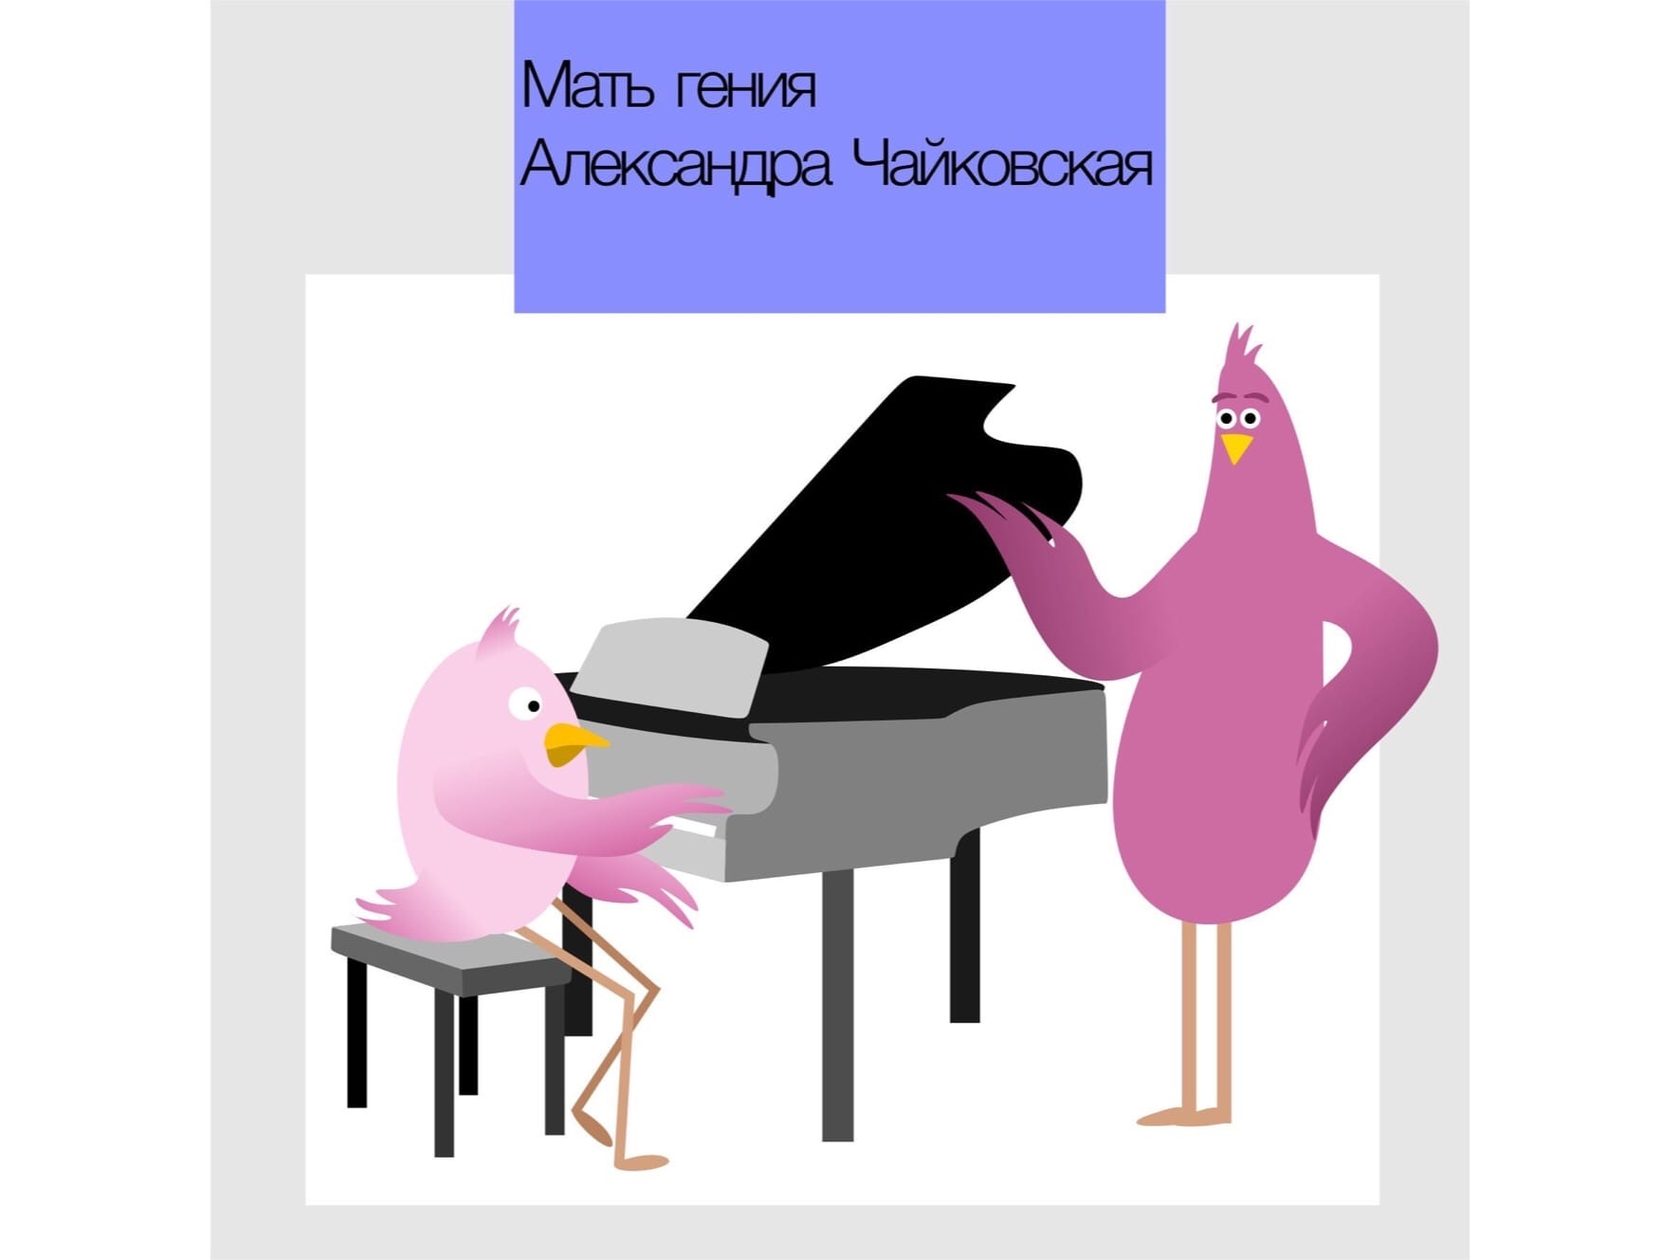 Птички любят музыку и математику